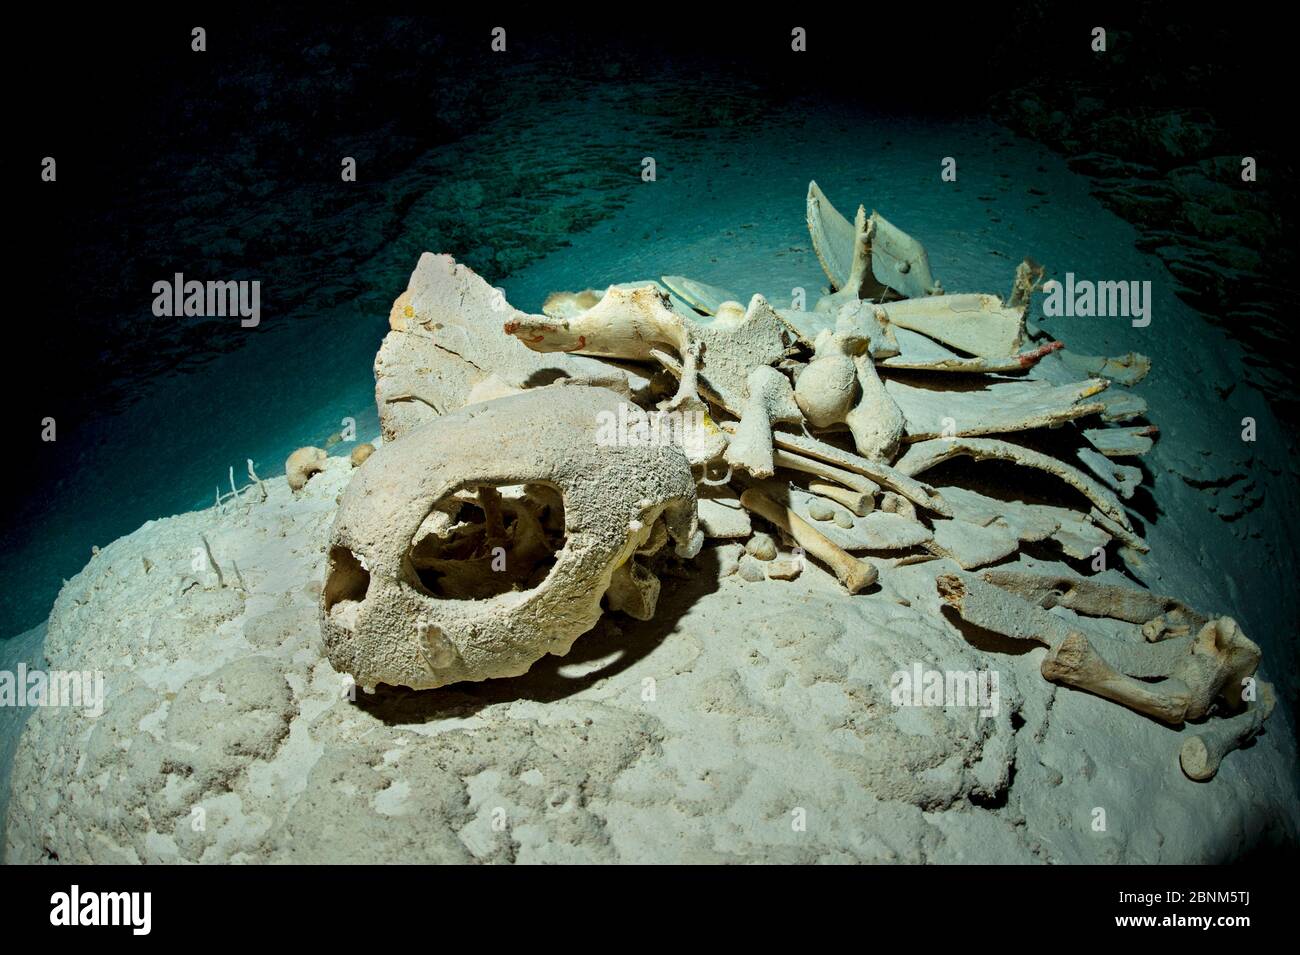 Grüne Meeresschildkröte (Chelonia mydas) Skelett tief in einer dunklen Höhle auf einem Korallenriff atmen Schildkröten Luft und gehen gelegentlich in Höhlen in Korallenriffen verloren Stockfoto